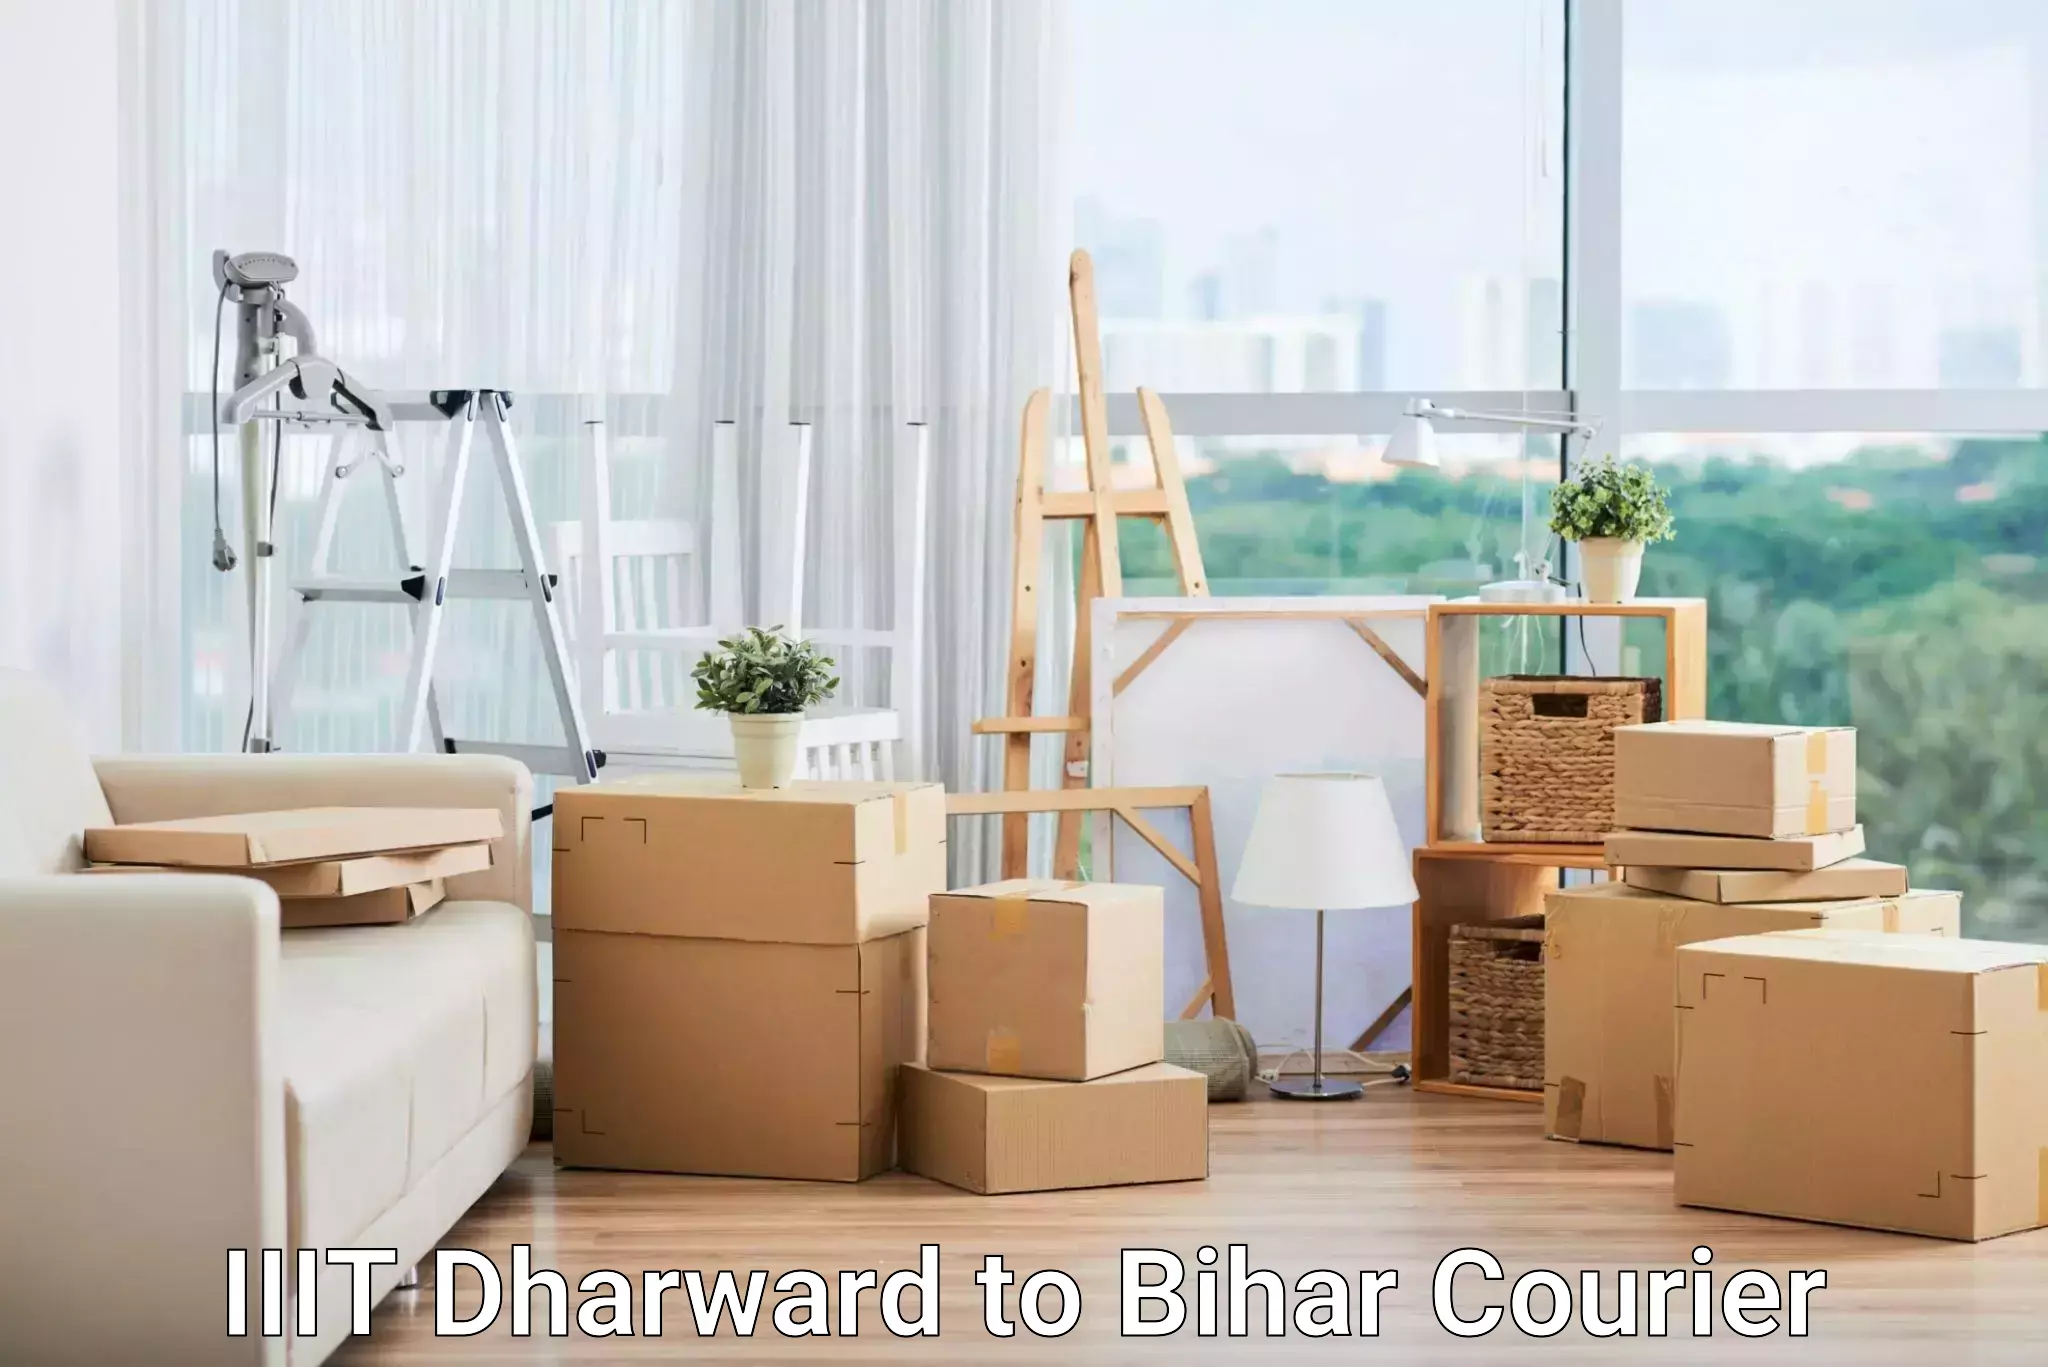 Same day shipping IIIT Dharward to Bihar